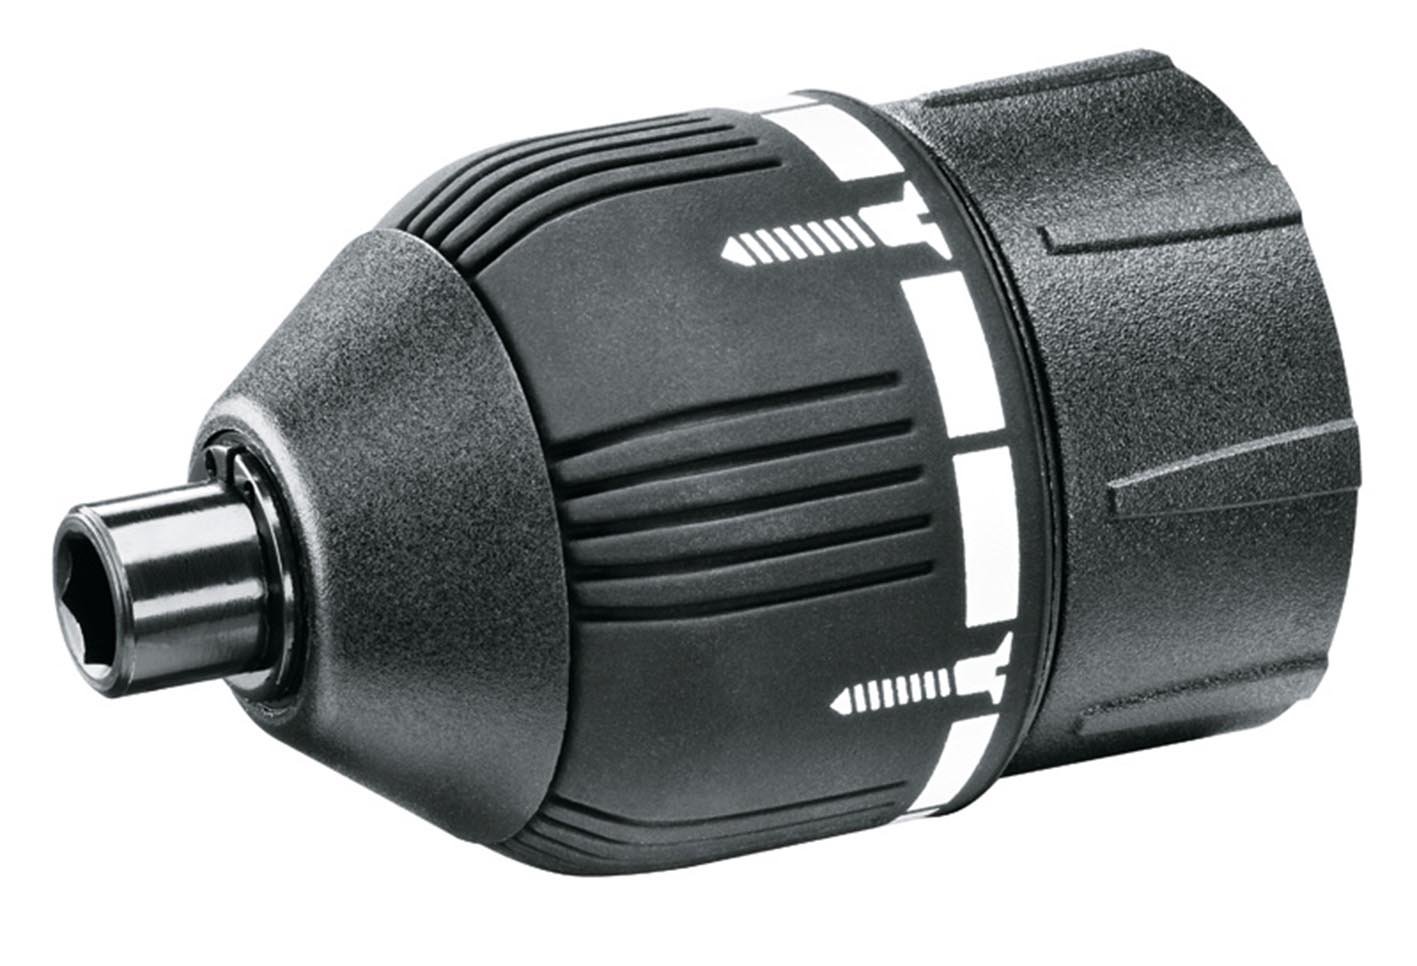 Bosch Torque Control Attachment for IXO III (Accessories for IXO Drill Drivers)